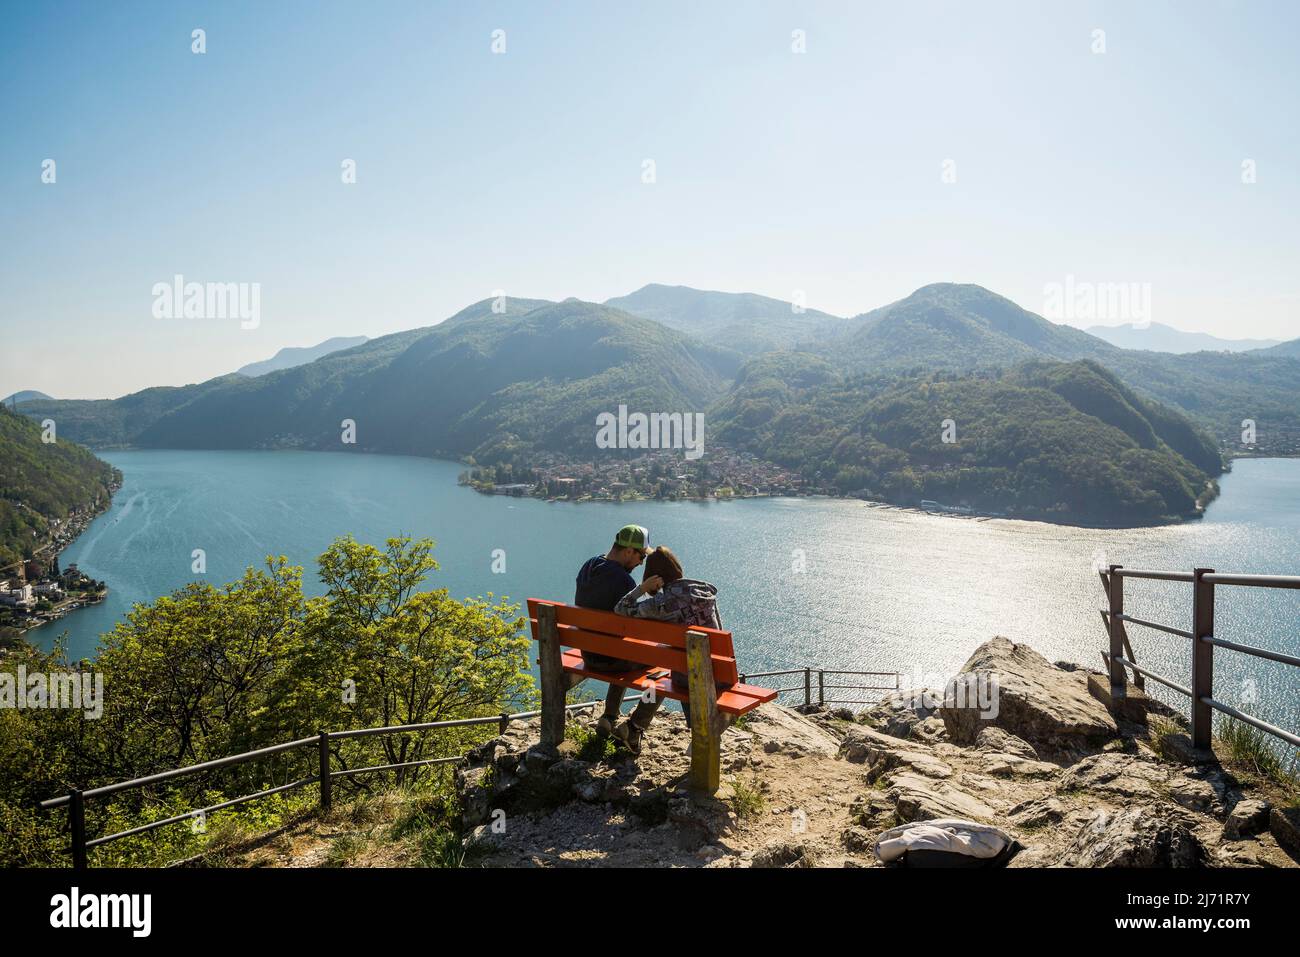 Viewpoint with couple on a bench, Sasso Delle Parole, near Lugano, Lake Lugano, Lago di Lugano, Ticino, Switzerland Stock Photo